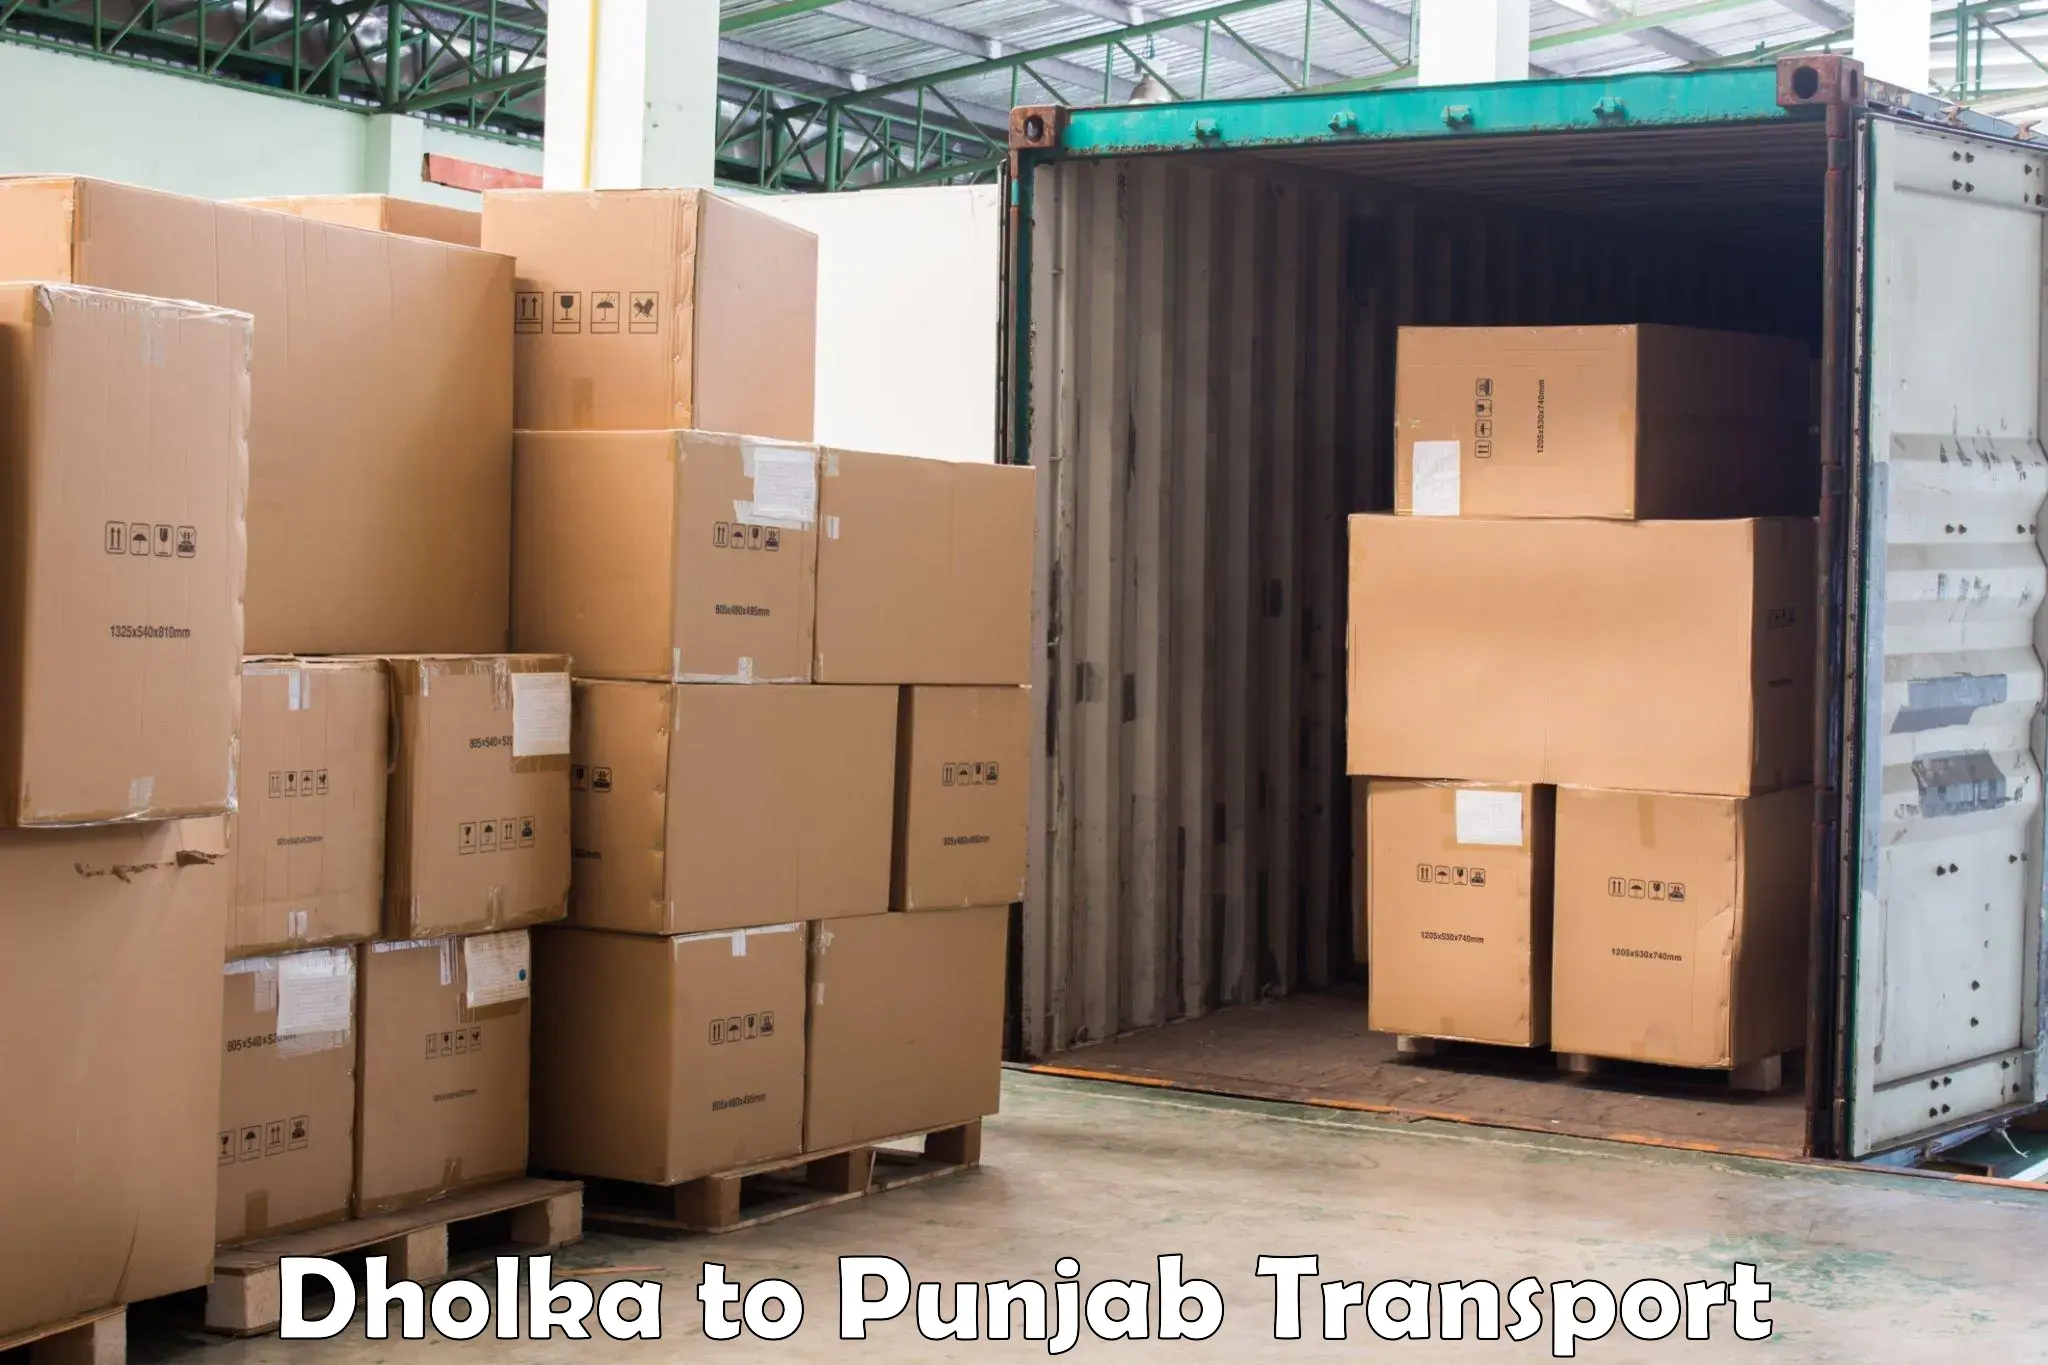 Pick up transport service Dholka to Bathinda